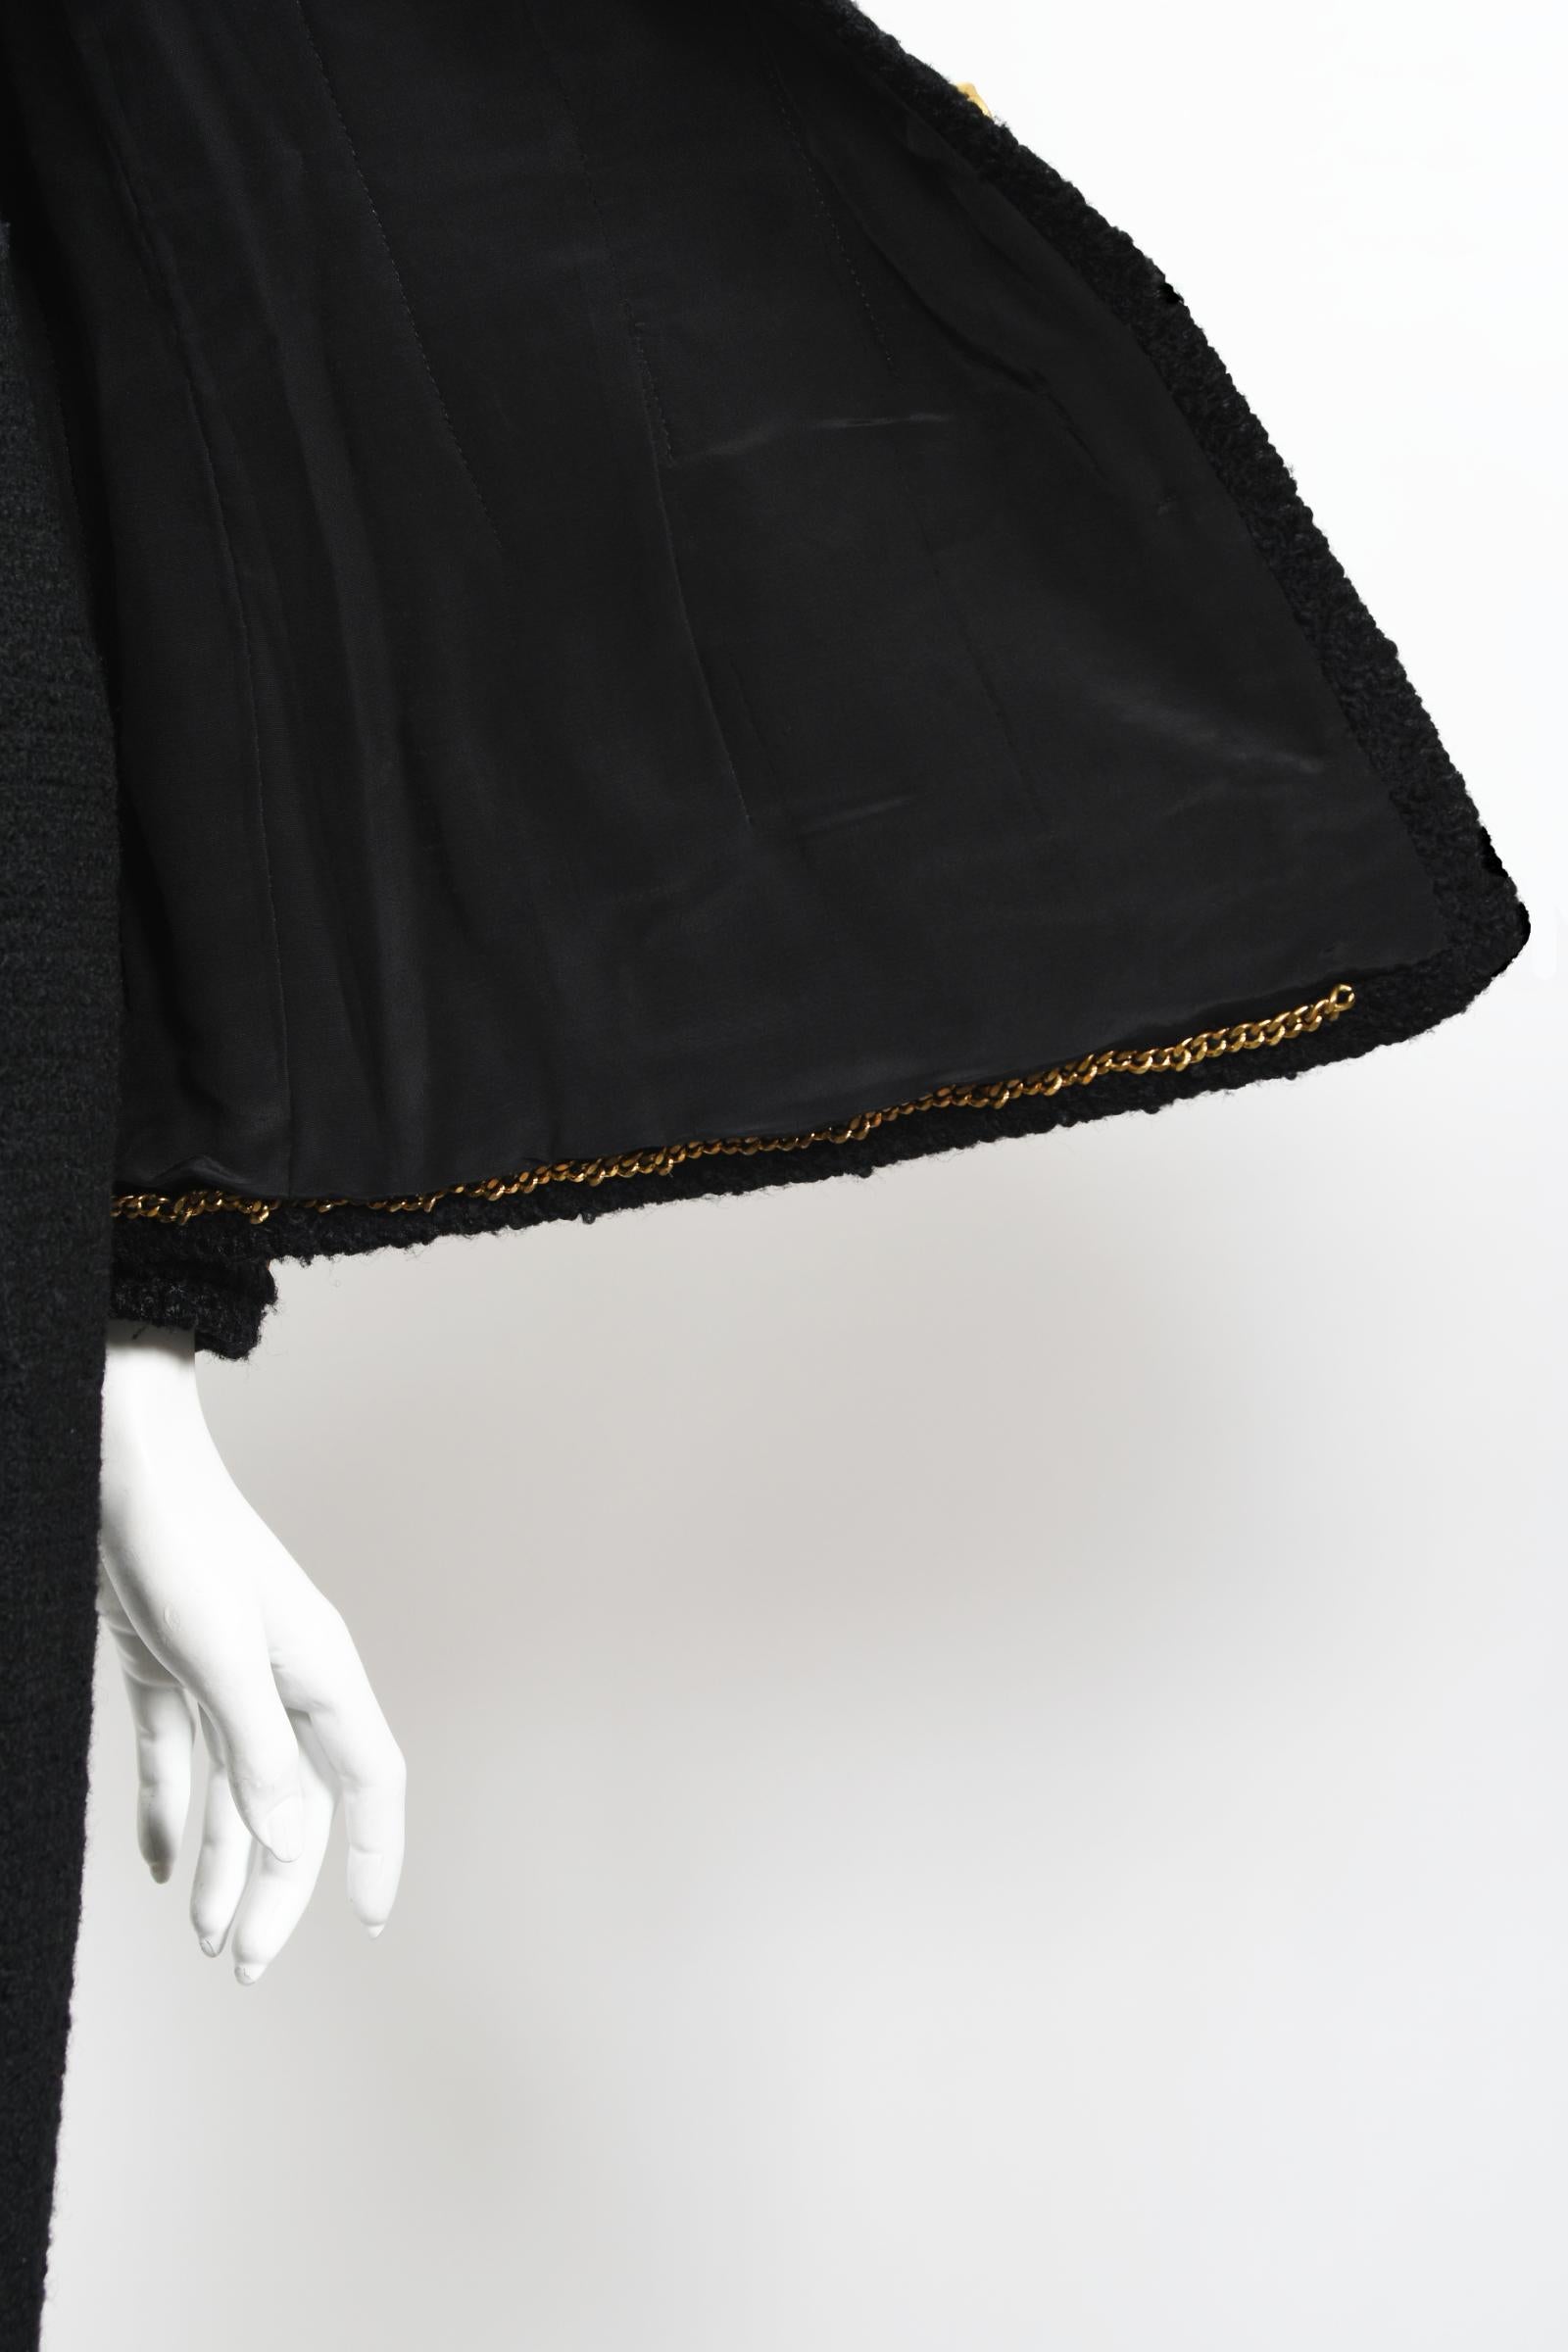 Vintage 1973 Chanel Haute Couture Black Boucle Wool Logo Buttons Jacket Suit  9